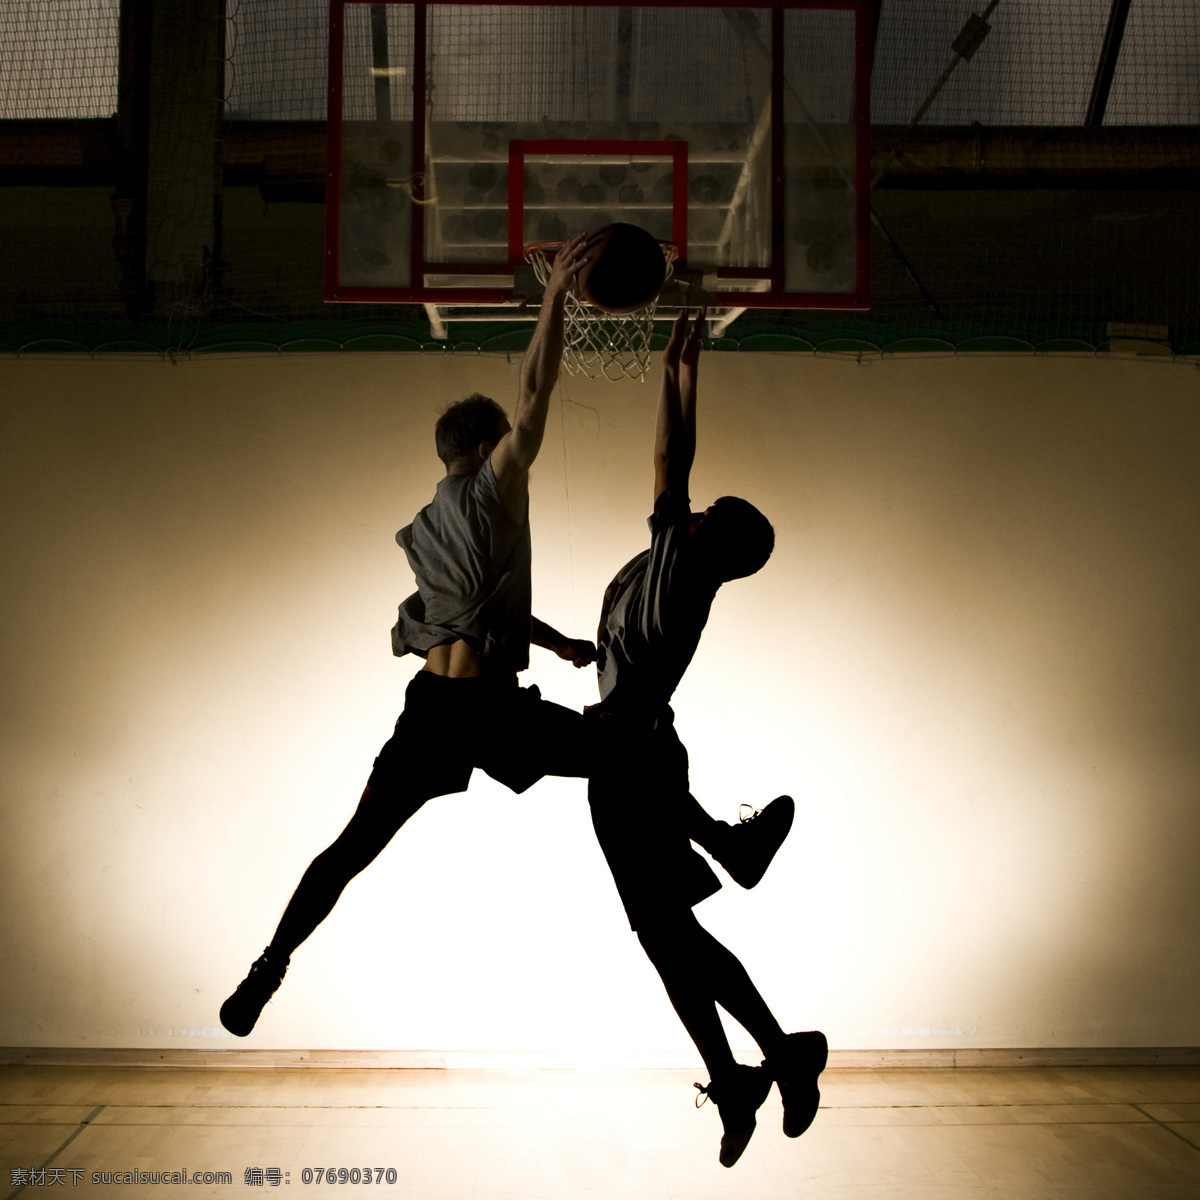 灌篮图片素材 灌篮 篮球 比赛 体育运动 幻彩背景 照片 男人图片 人物图片